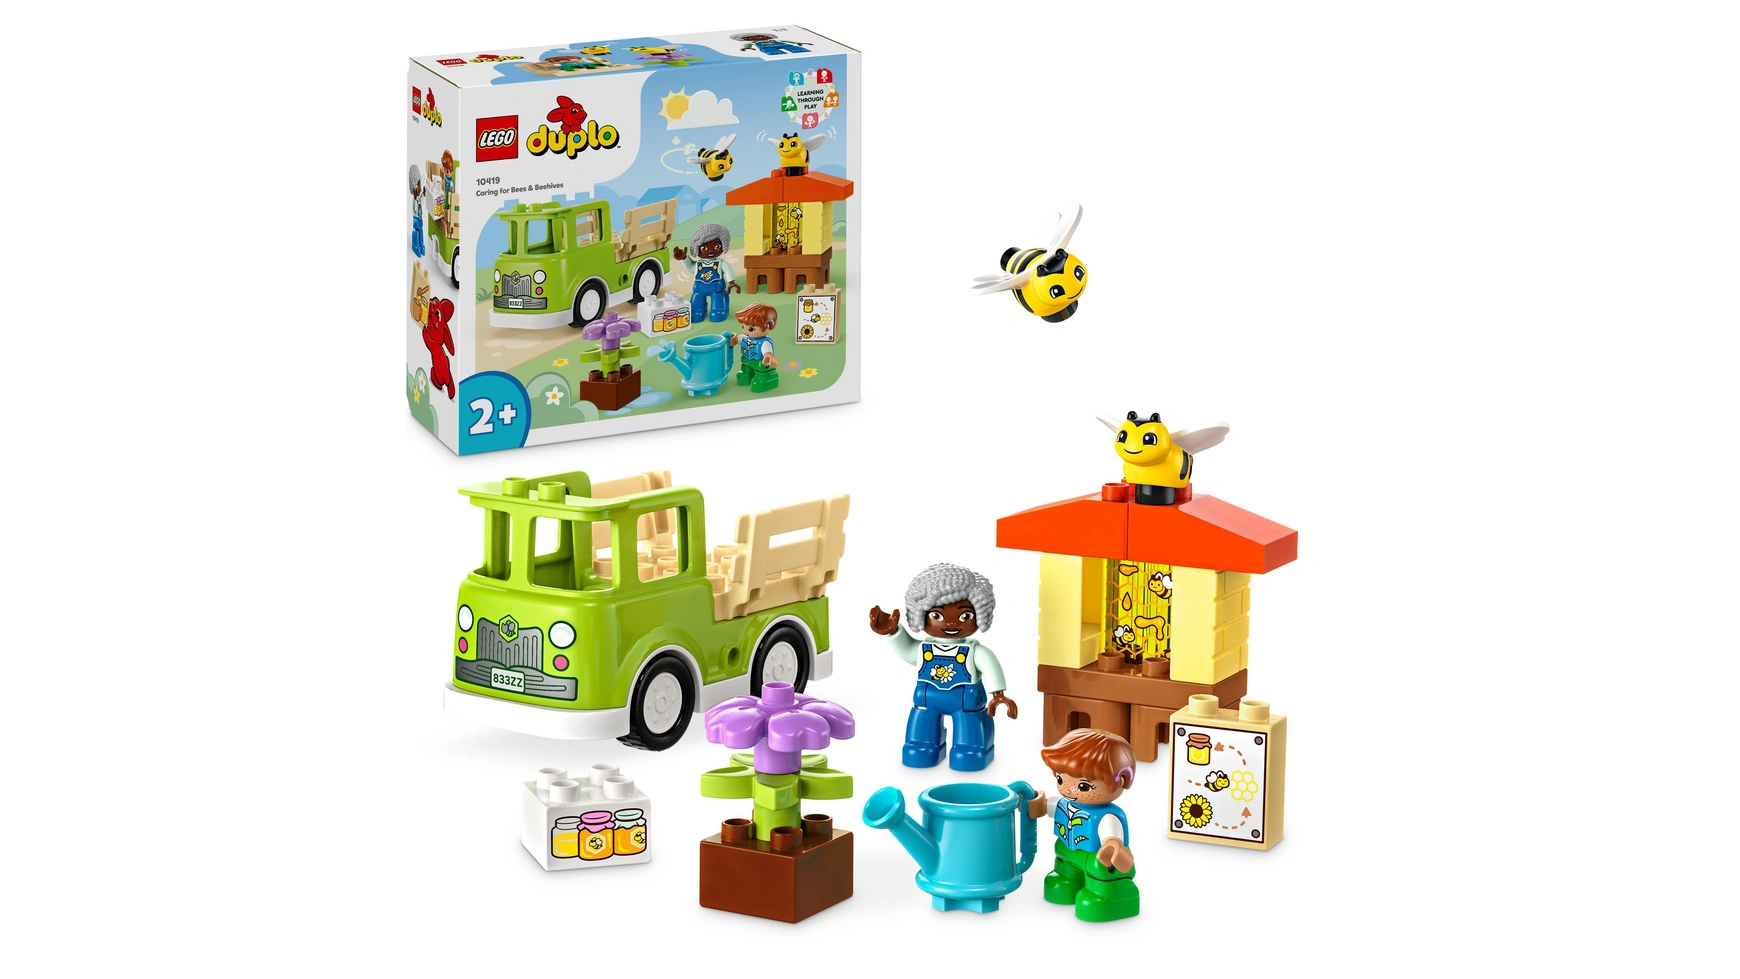 Lego DUPLO Town Пчеловодство и ульи, игрушки для животных для детей от 2 лет lego duplo town ветряная турбина и электромобиль развивающая игрушка для детей от 2 лет и старше